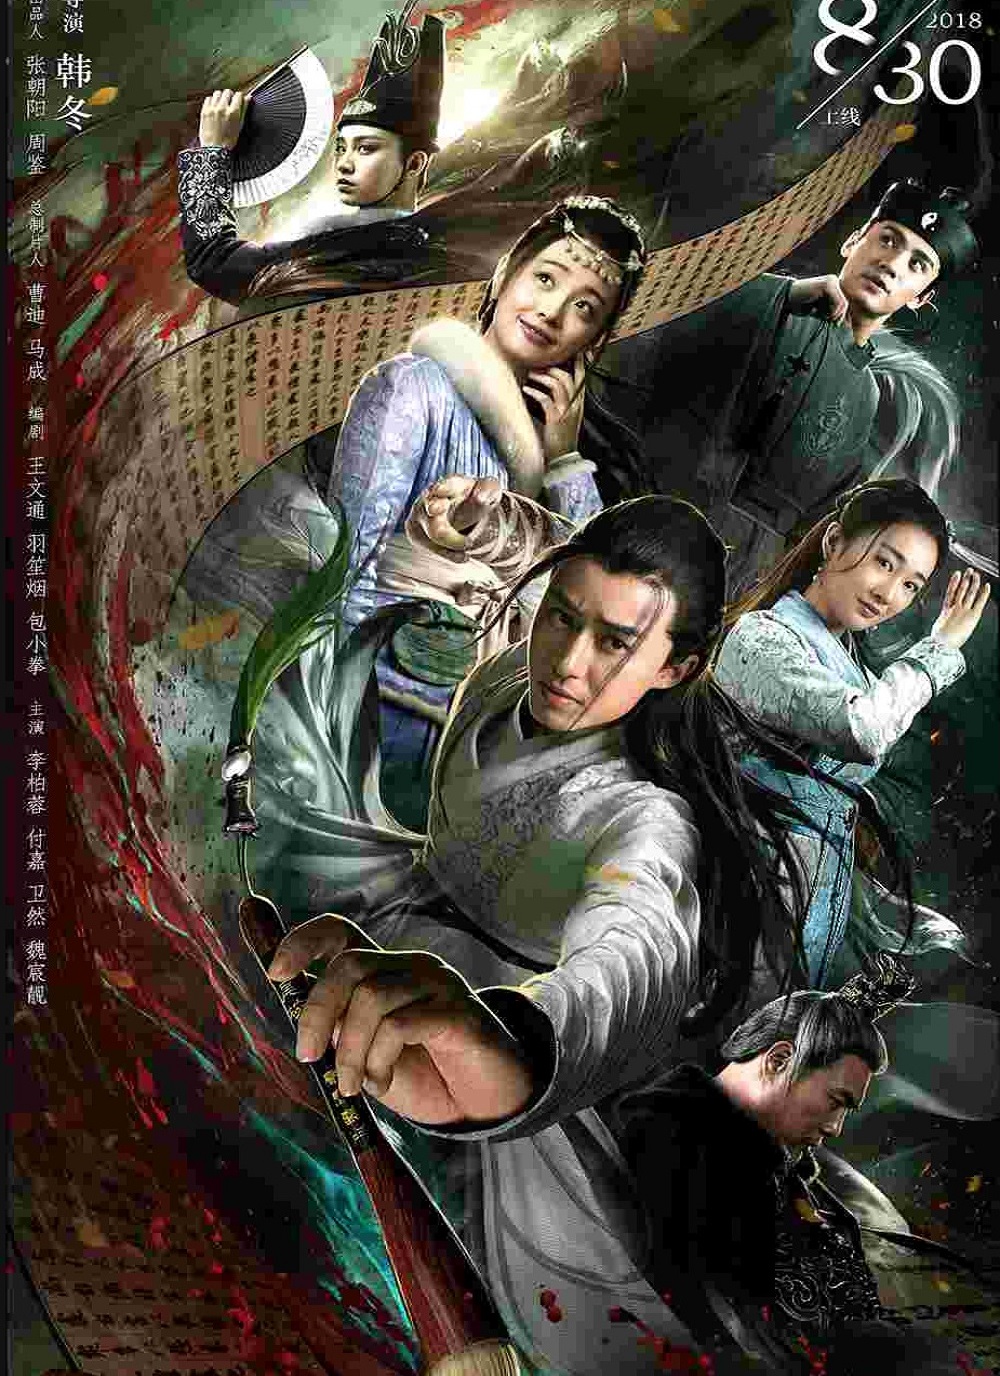 Poster Phim Đường Thi Tam Bách Án (The Untold Stories Of Tang Dynasty)